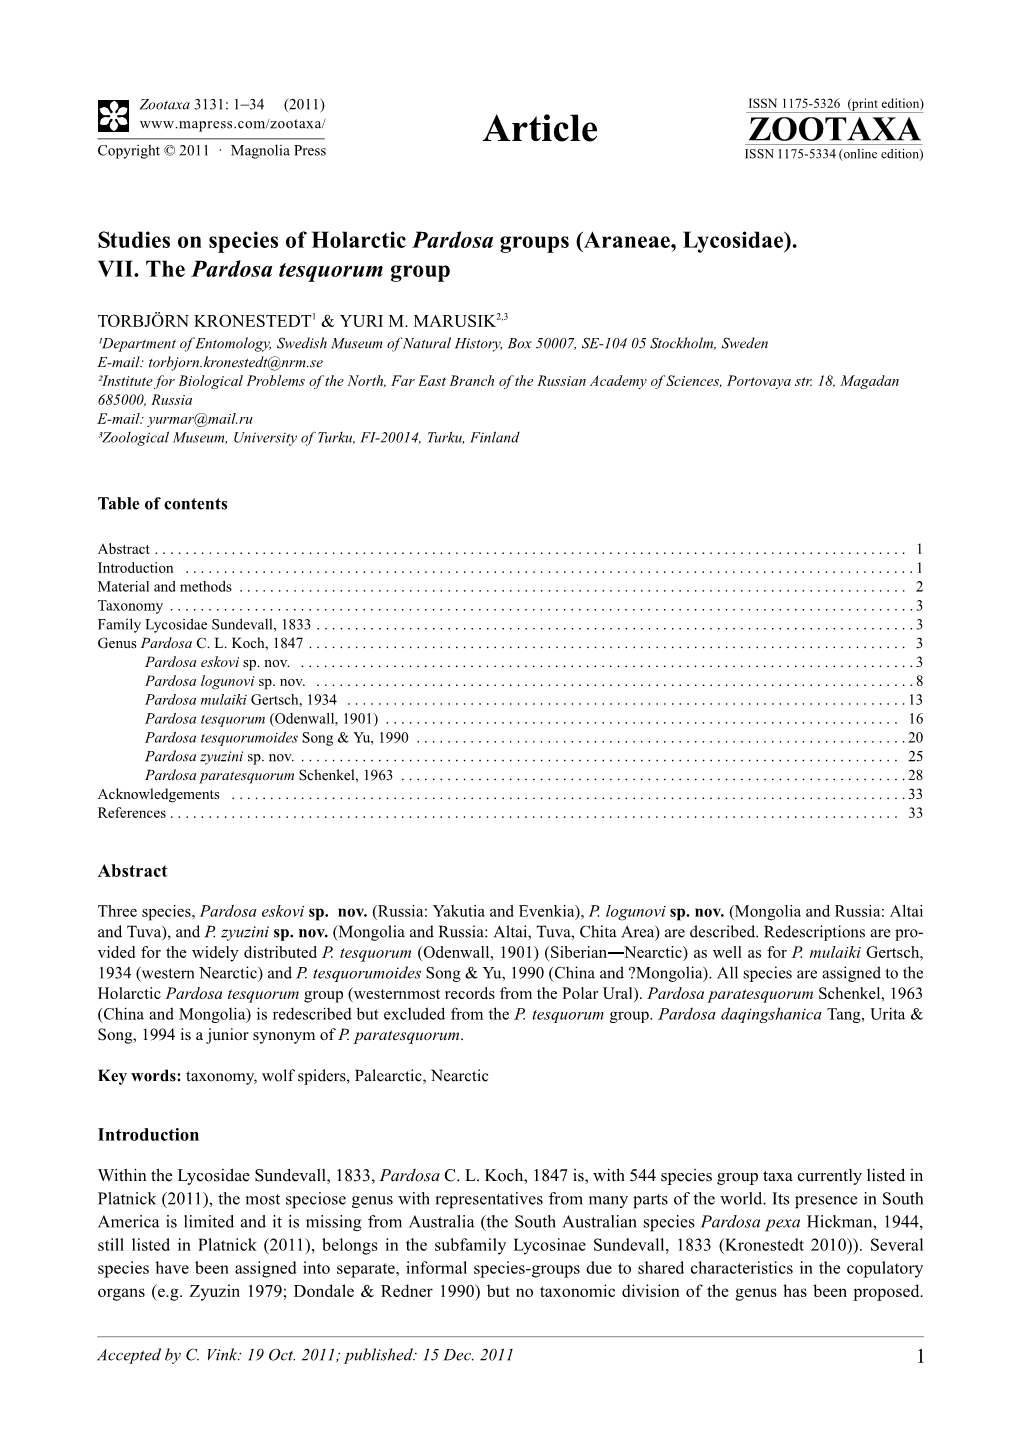 VII. the Pardosa Tesquorum Group